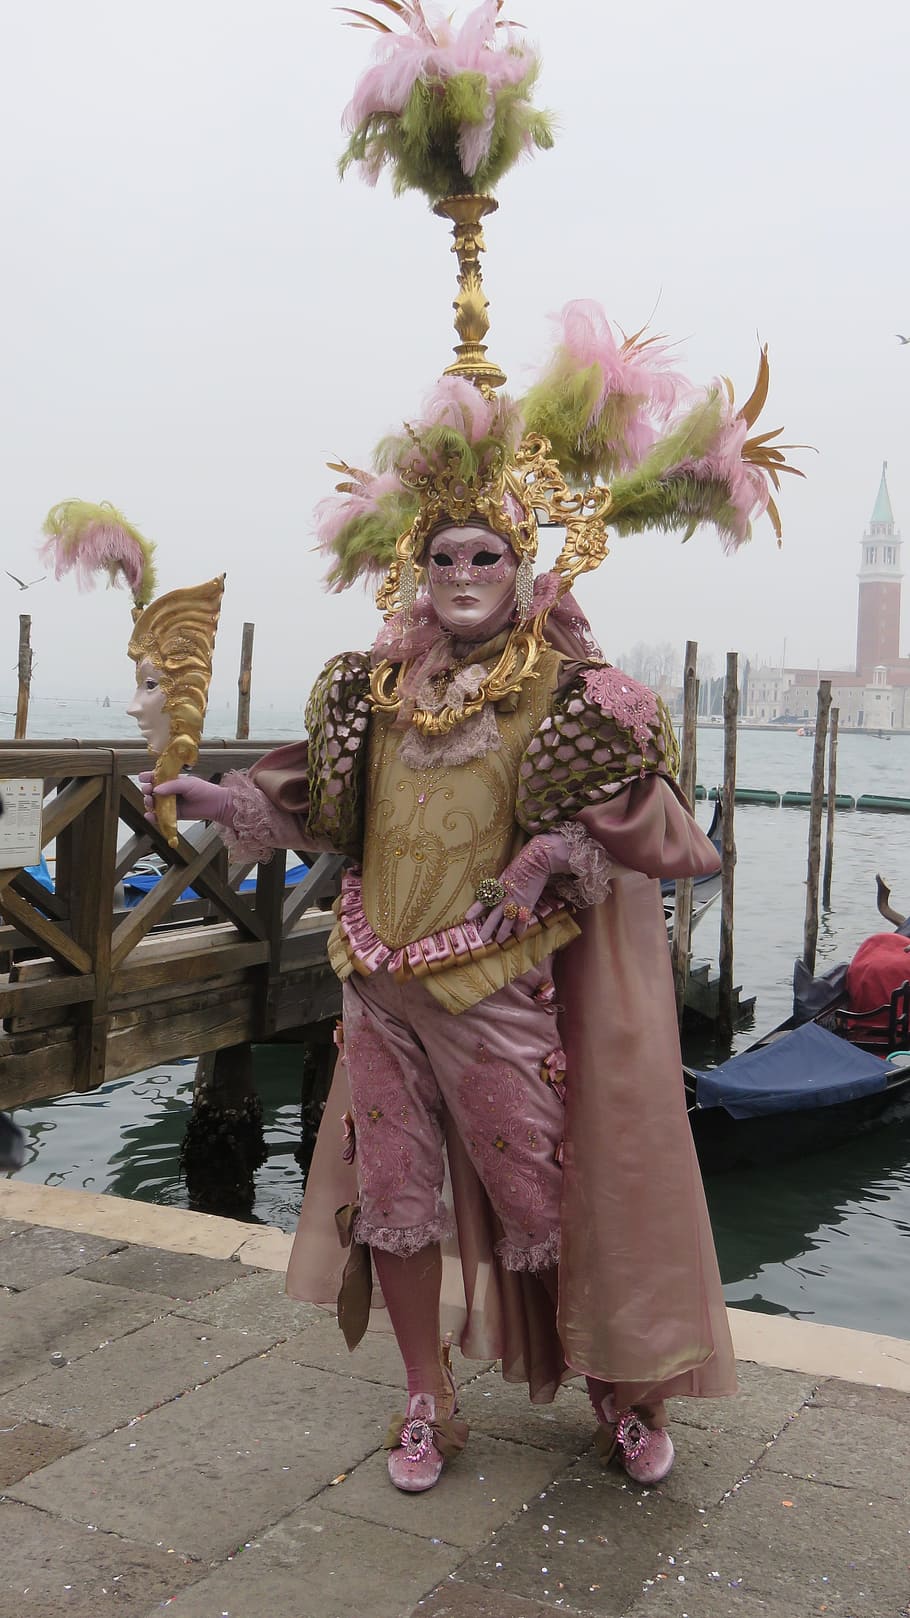 Venice, Carnival, Mask, Costume, Italy, venice, carnival, masquerade, decorated, panel, venezia